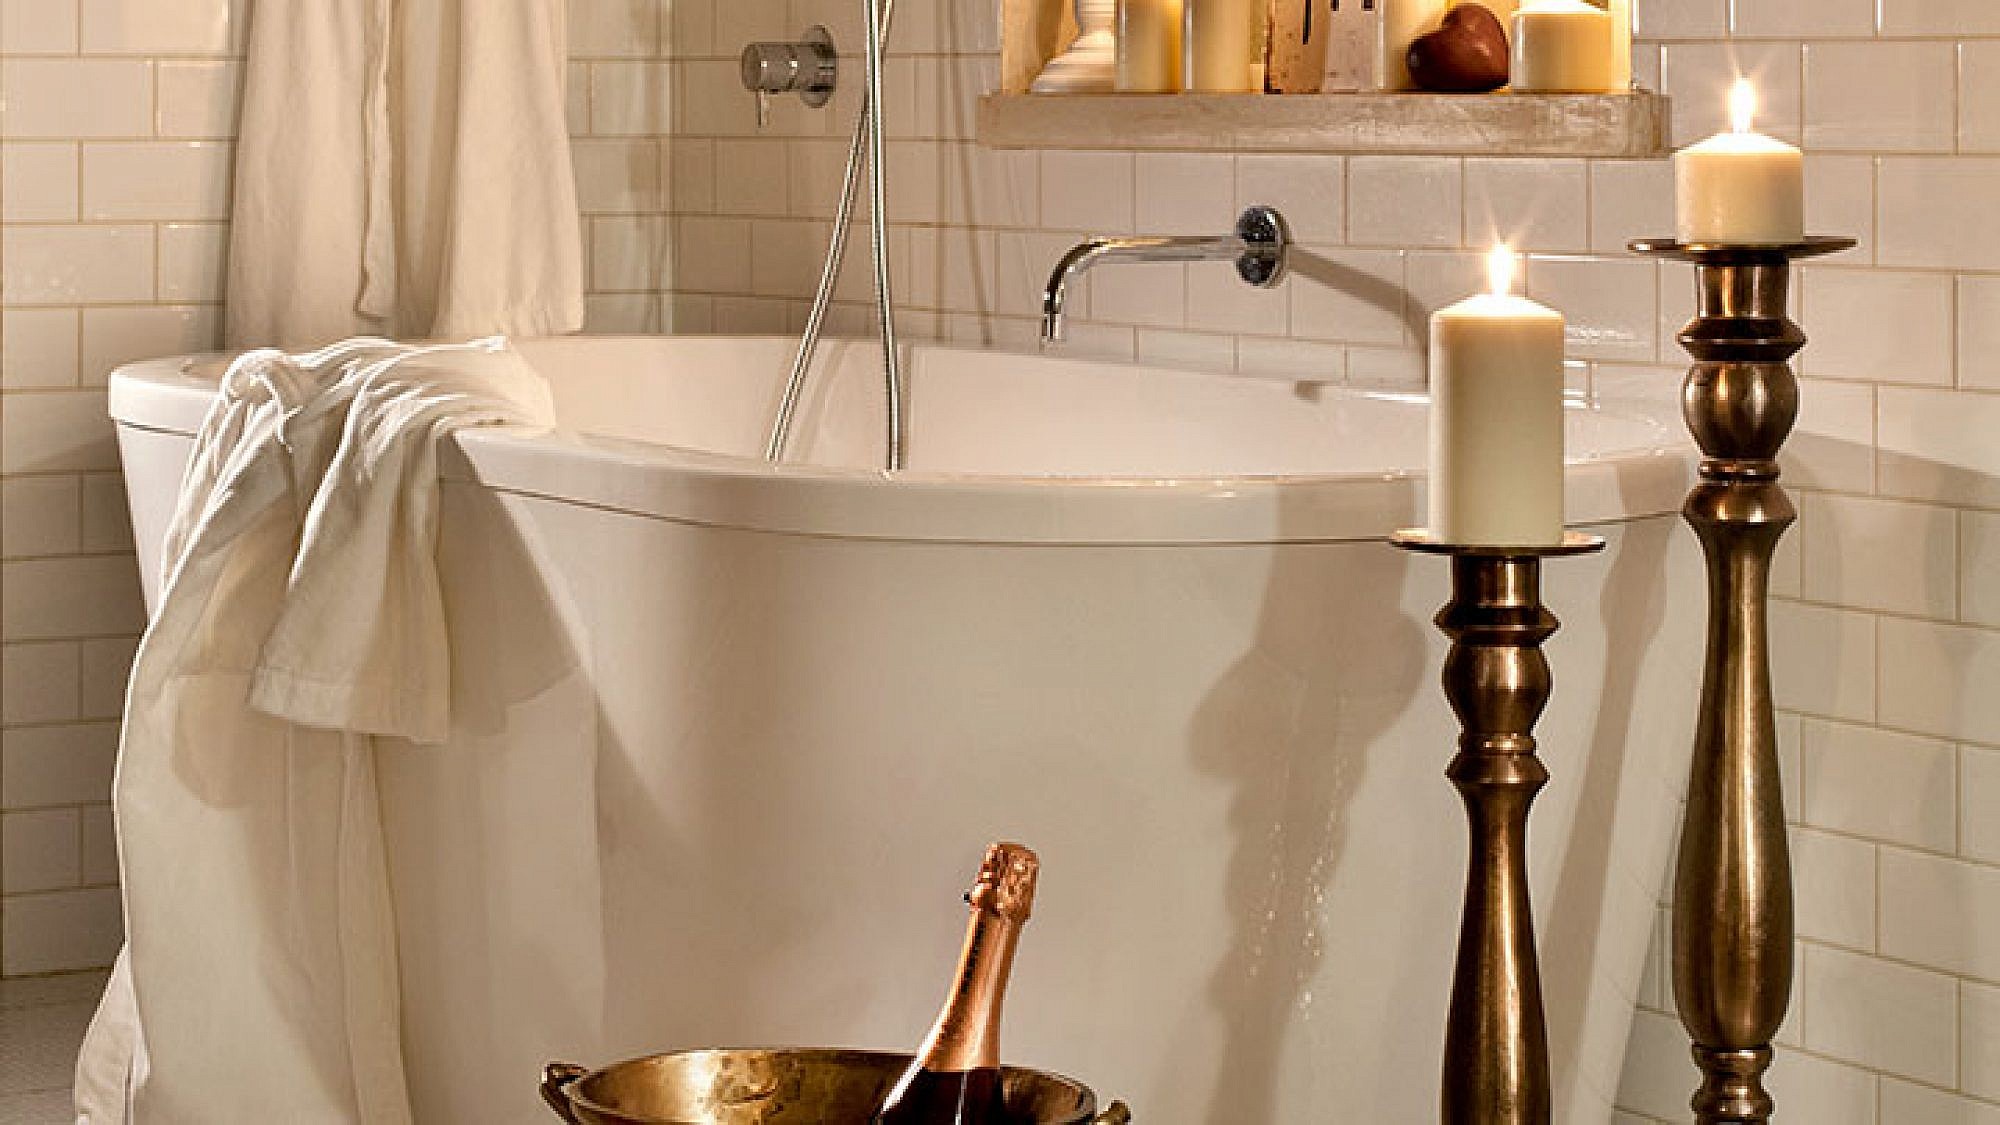 אמבטיה בניחוח רומנטי | צילום: בועז לביא